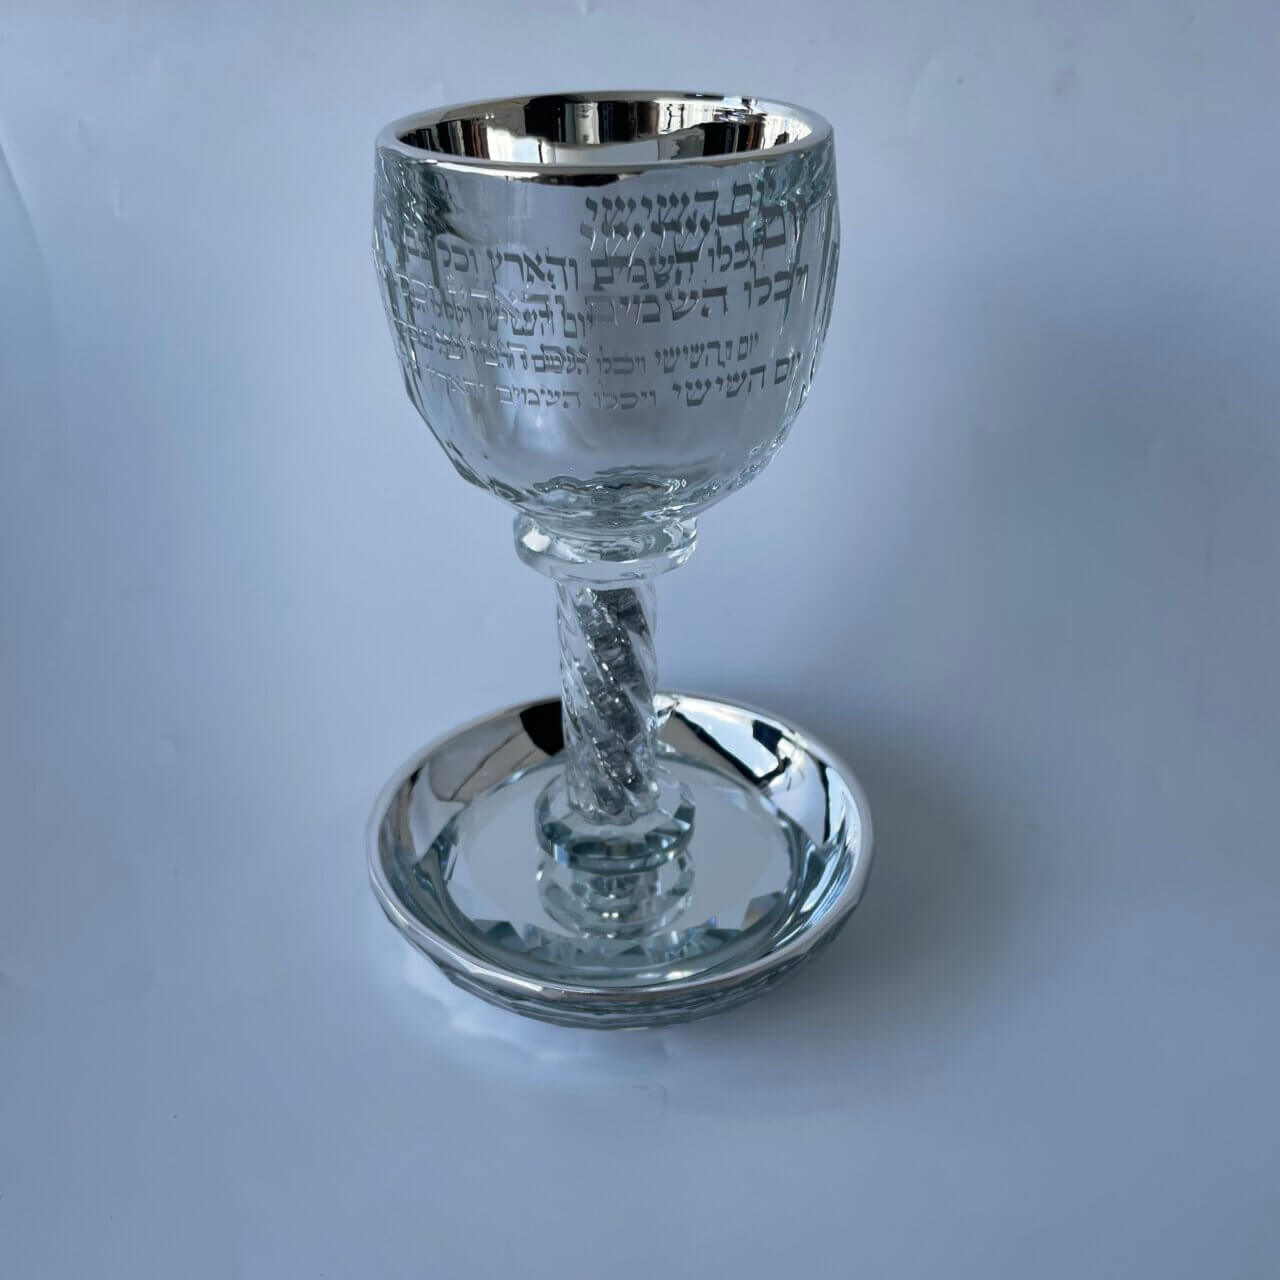 גביע קידוש קריסטל צבע כסף  "קידוש- יום השישי" במילוי אבנים כסף